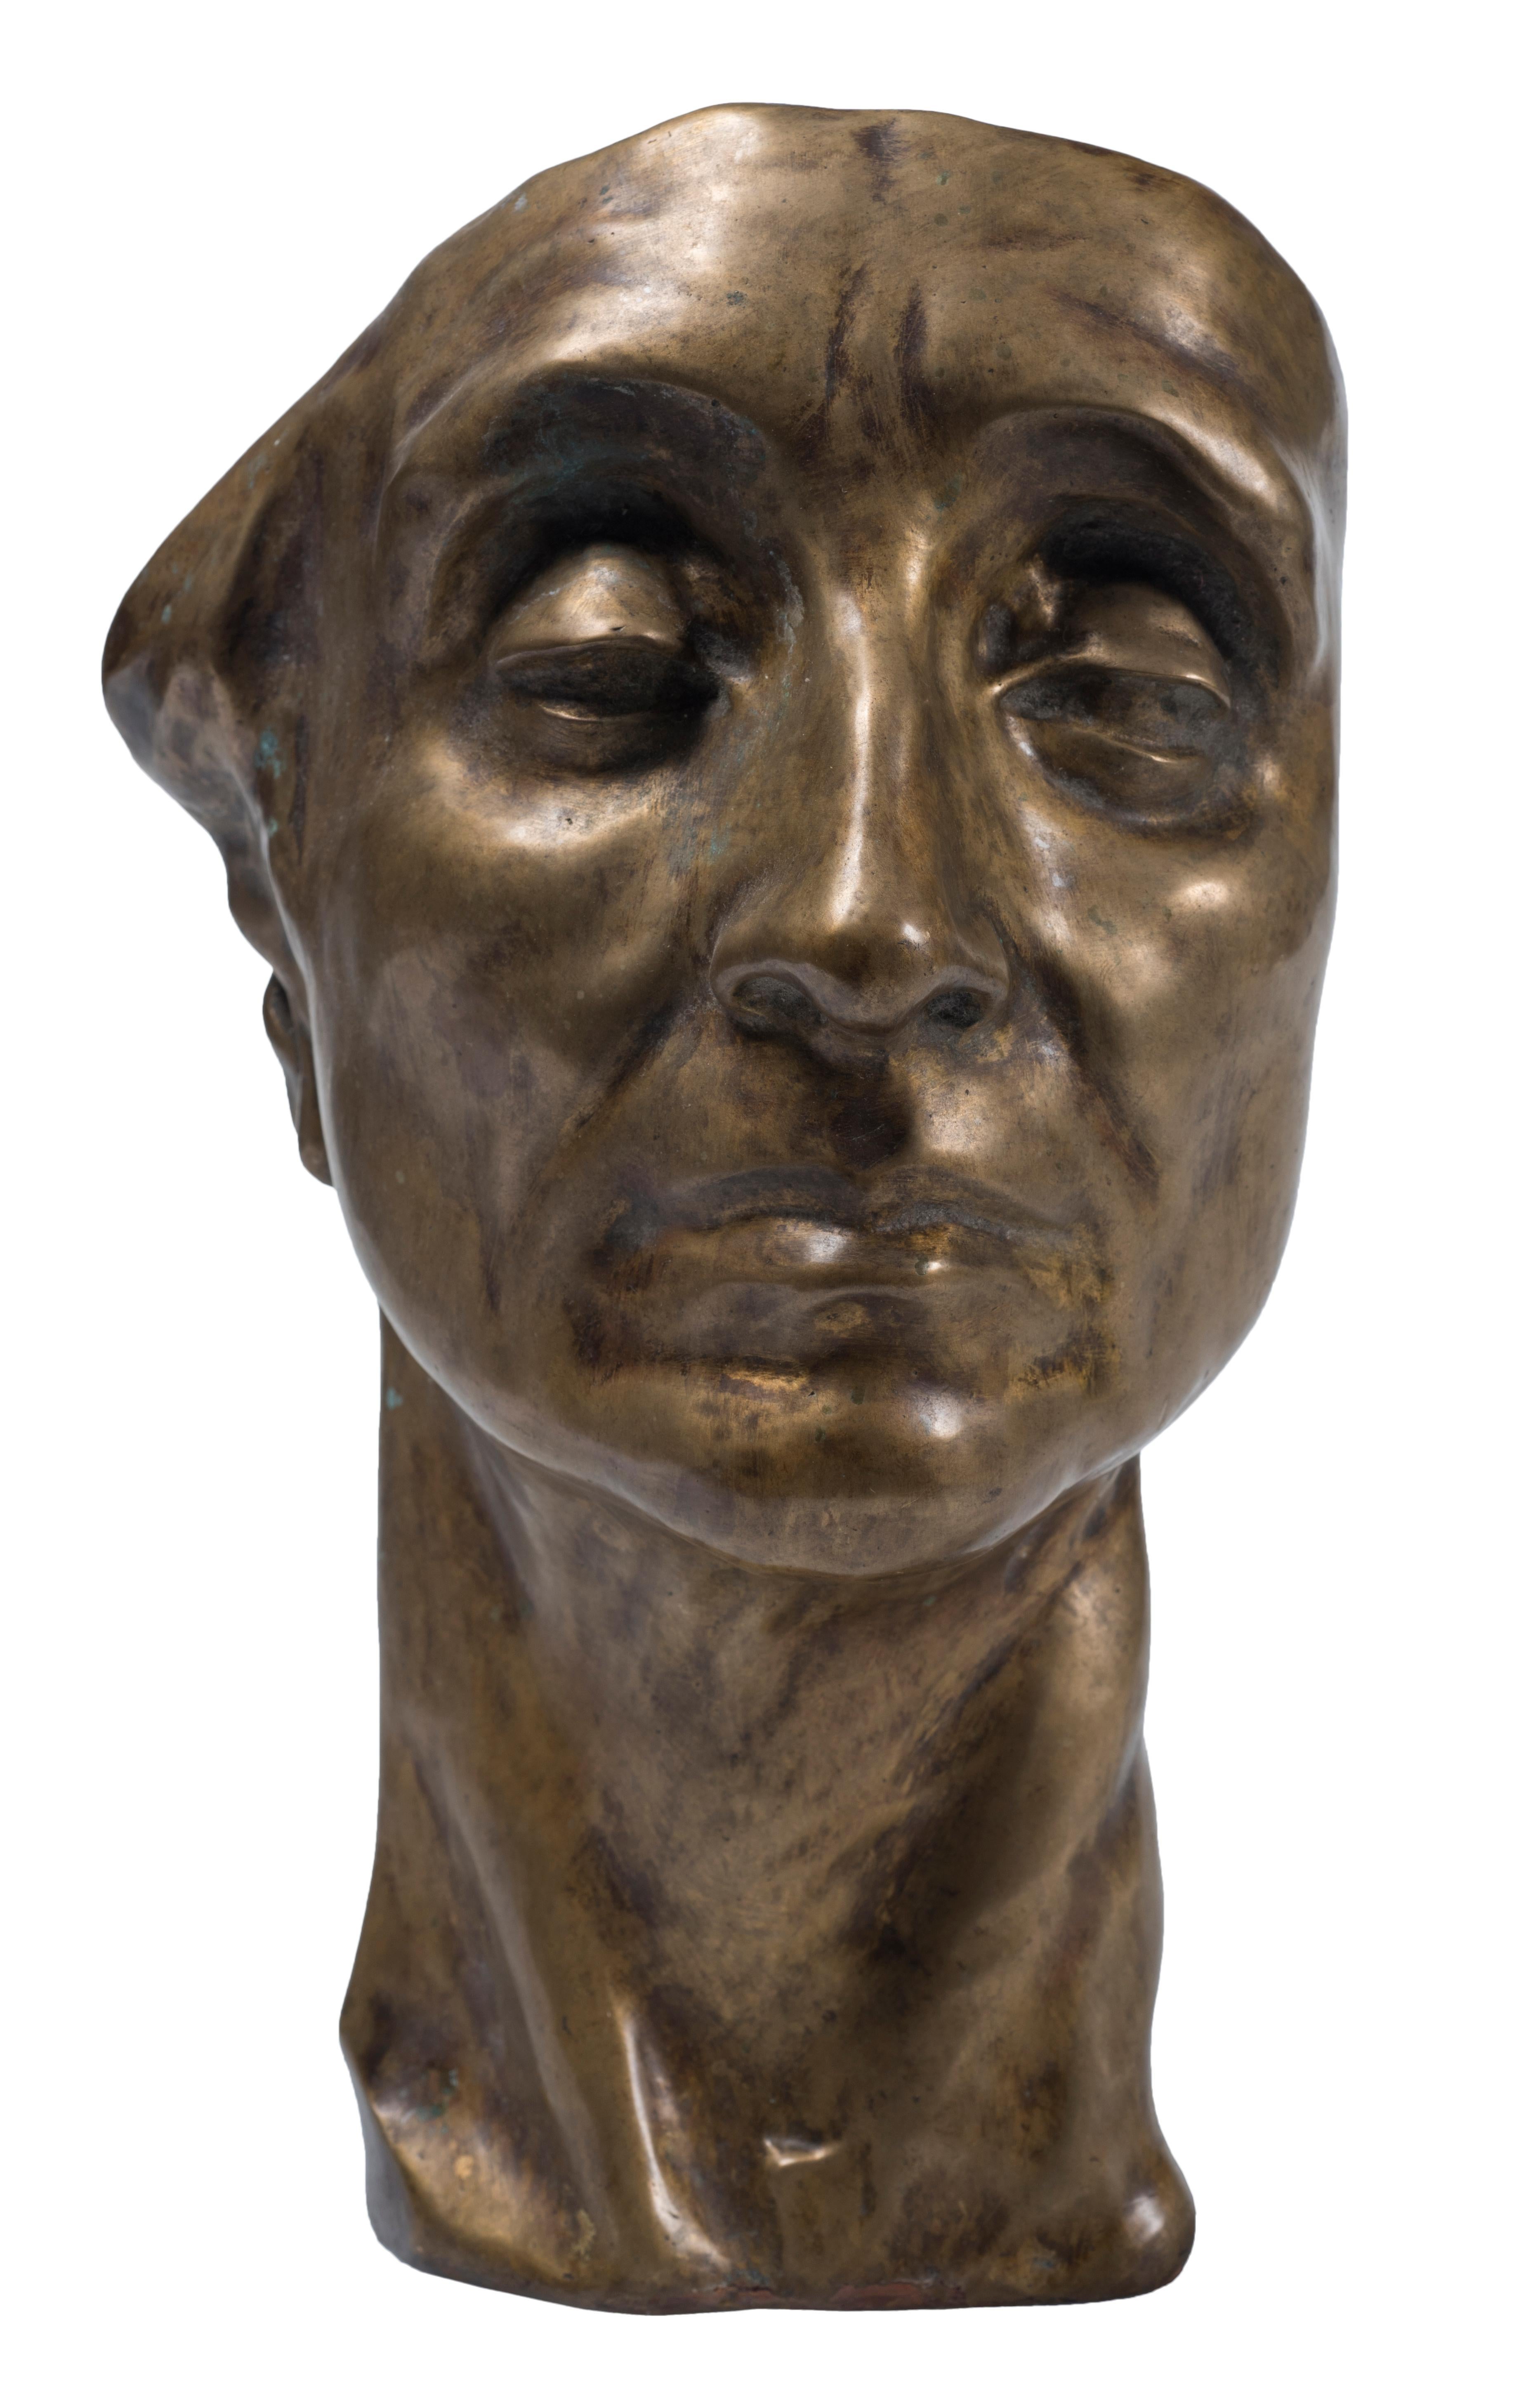 Head of Man - Bronze Sculpture by Amedeo Bocchi - 1920s